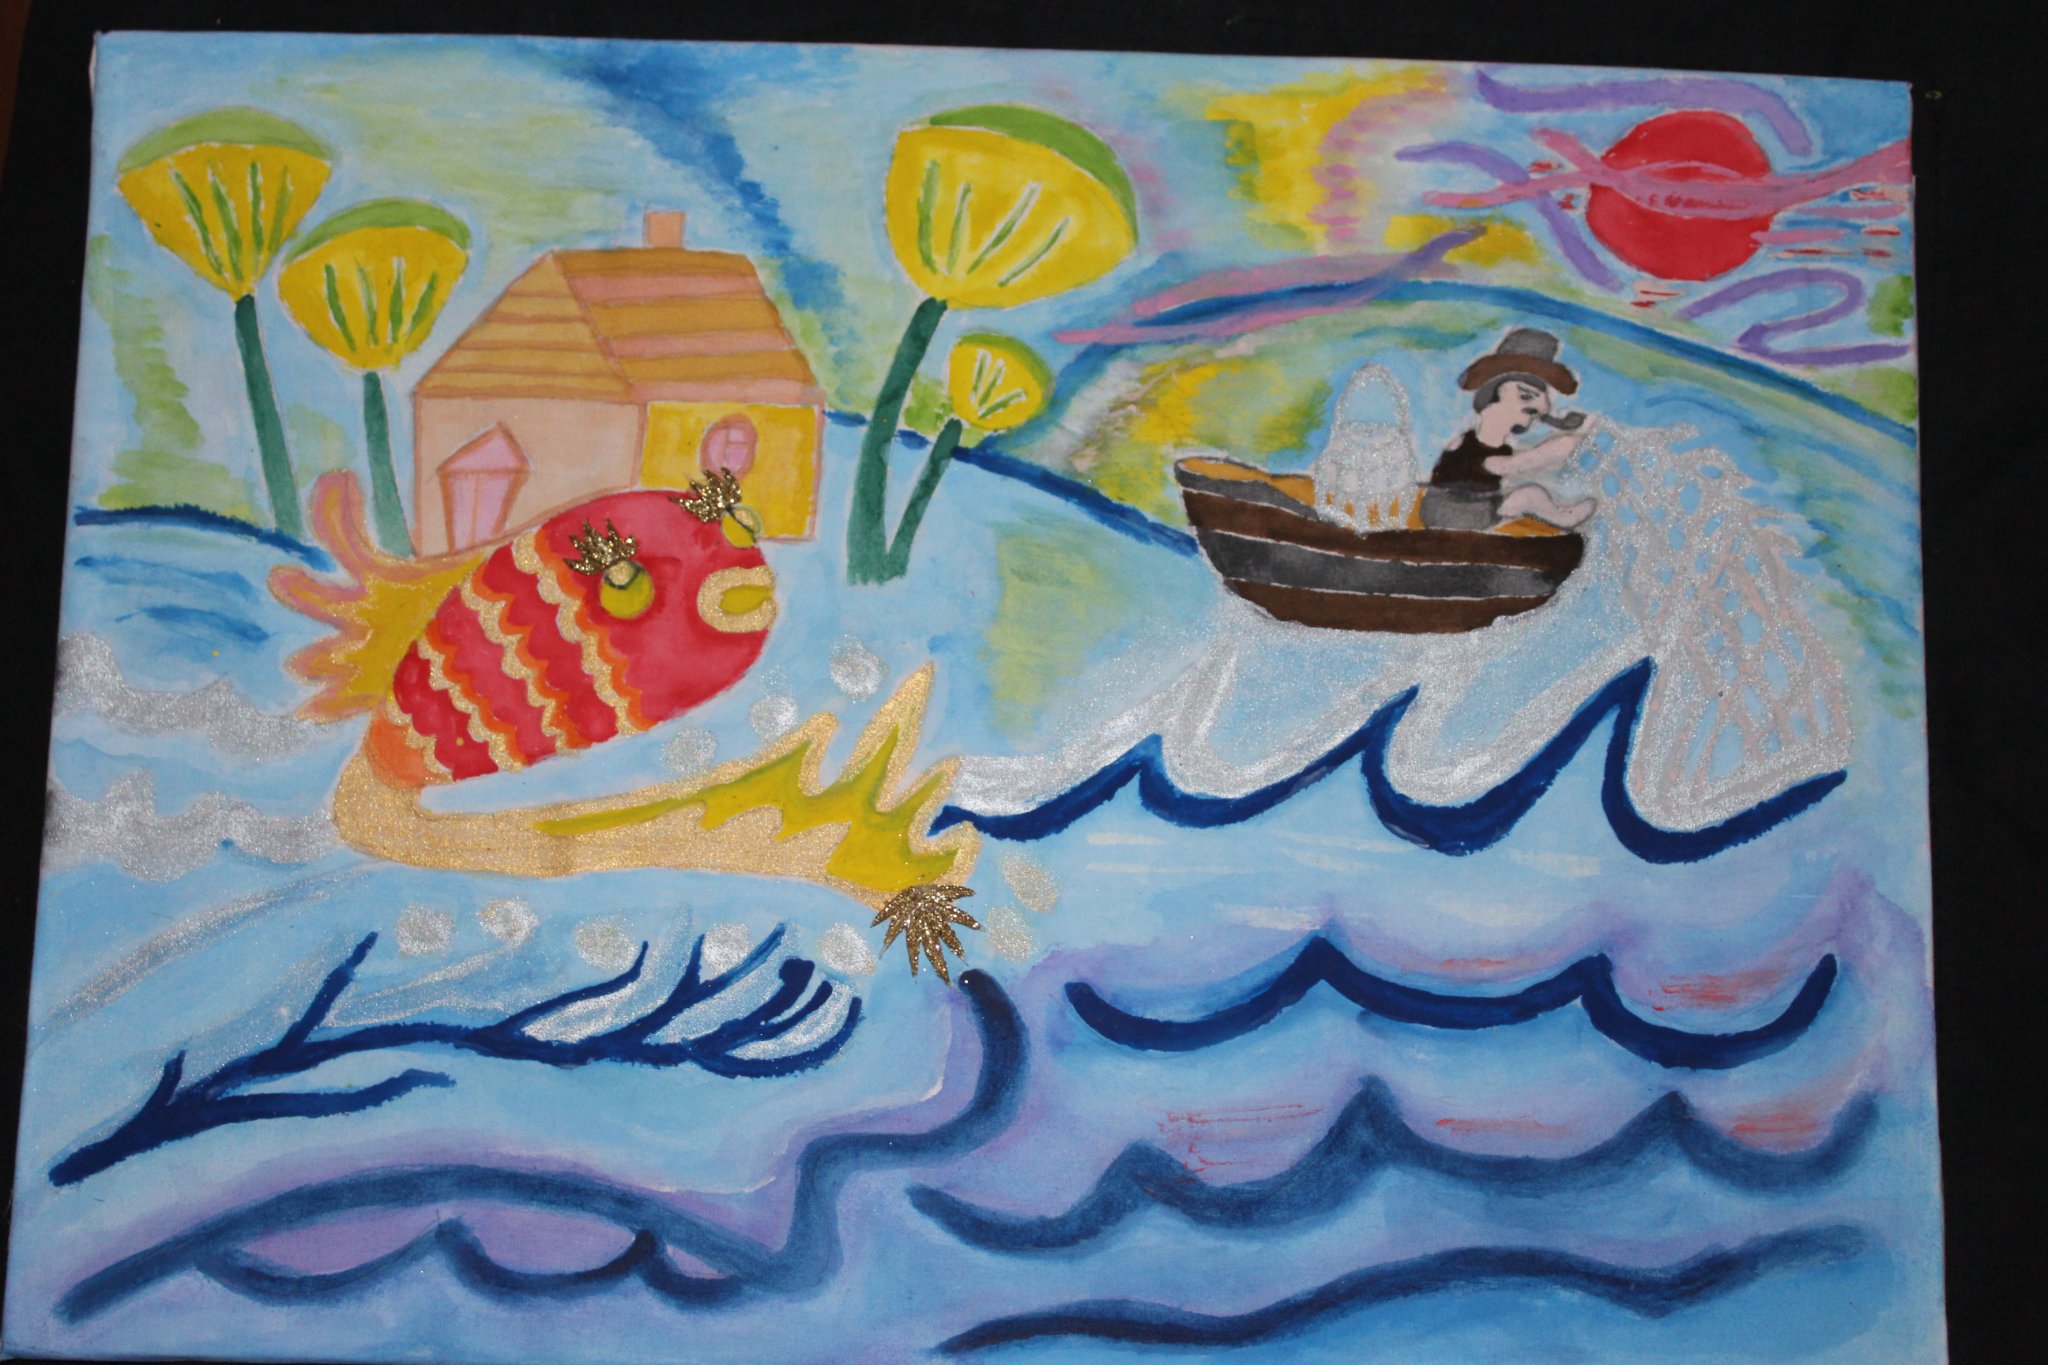 Praca namalowana farbkami. Dom z drzewami, rybak na łódce a za nim ryba.